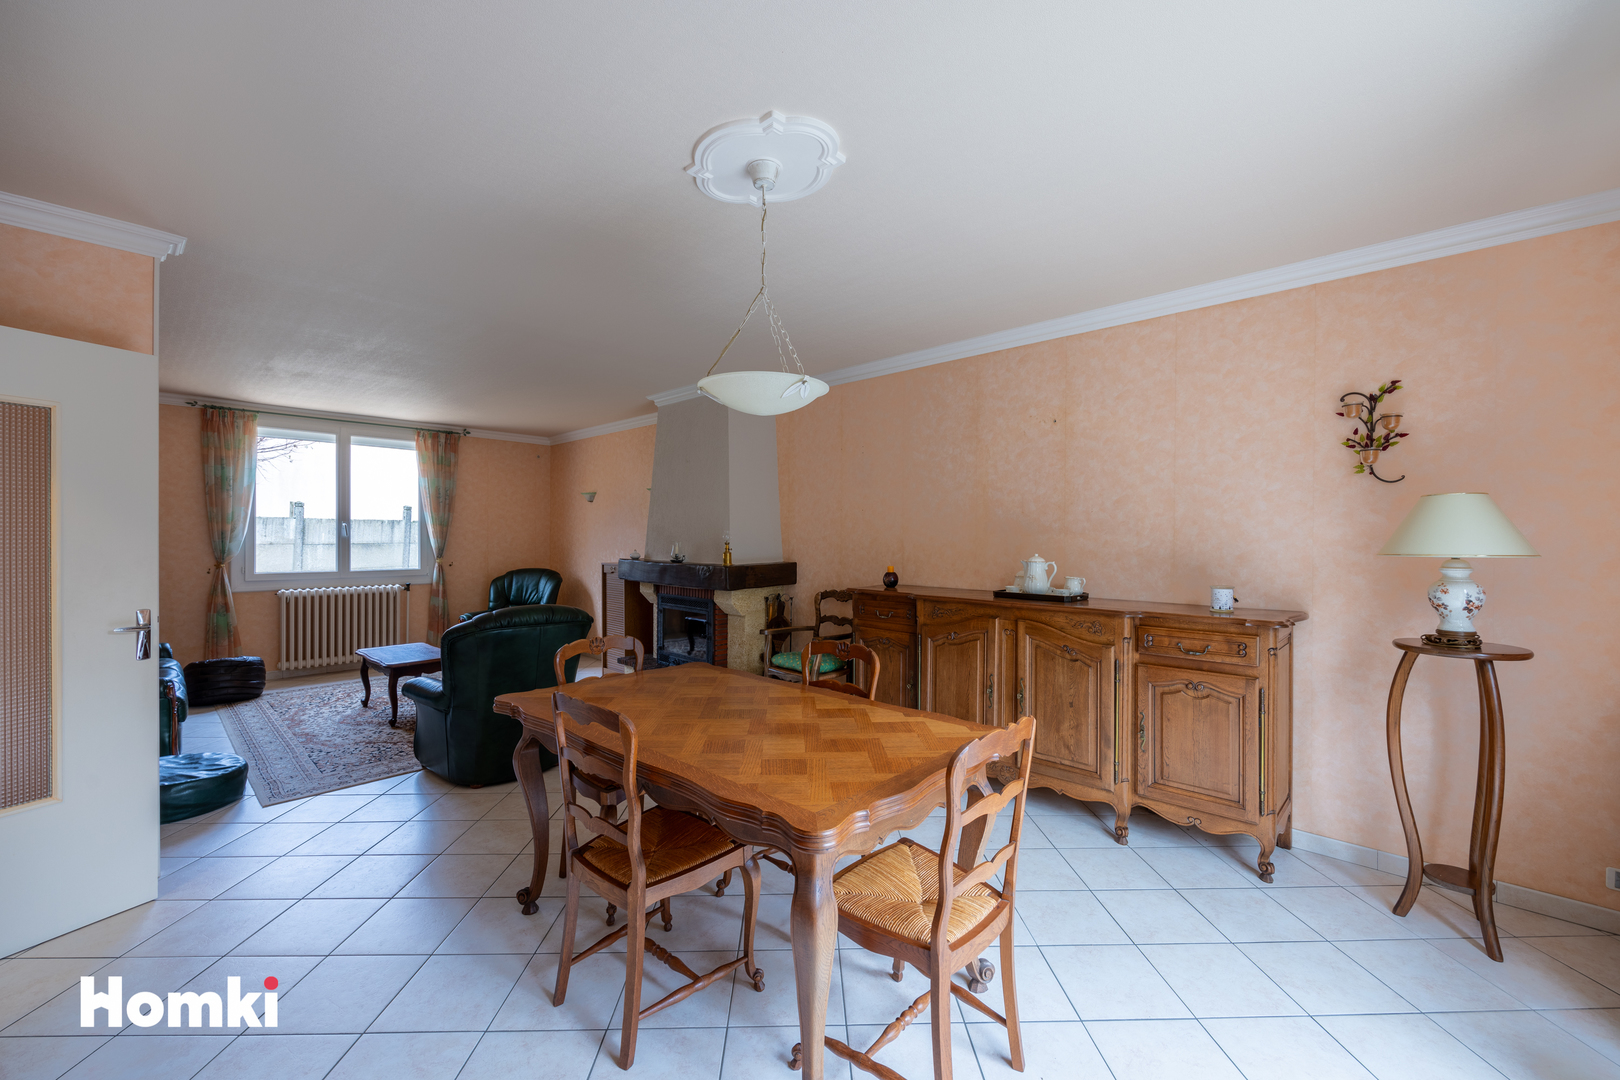 Homki - Vente Maison/villa  de 113.0 m² à Pouzauges 85700